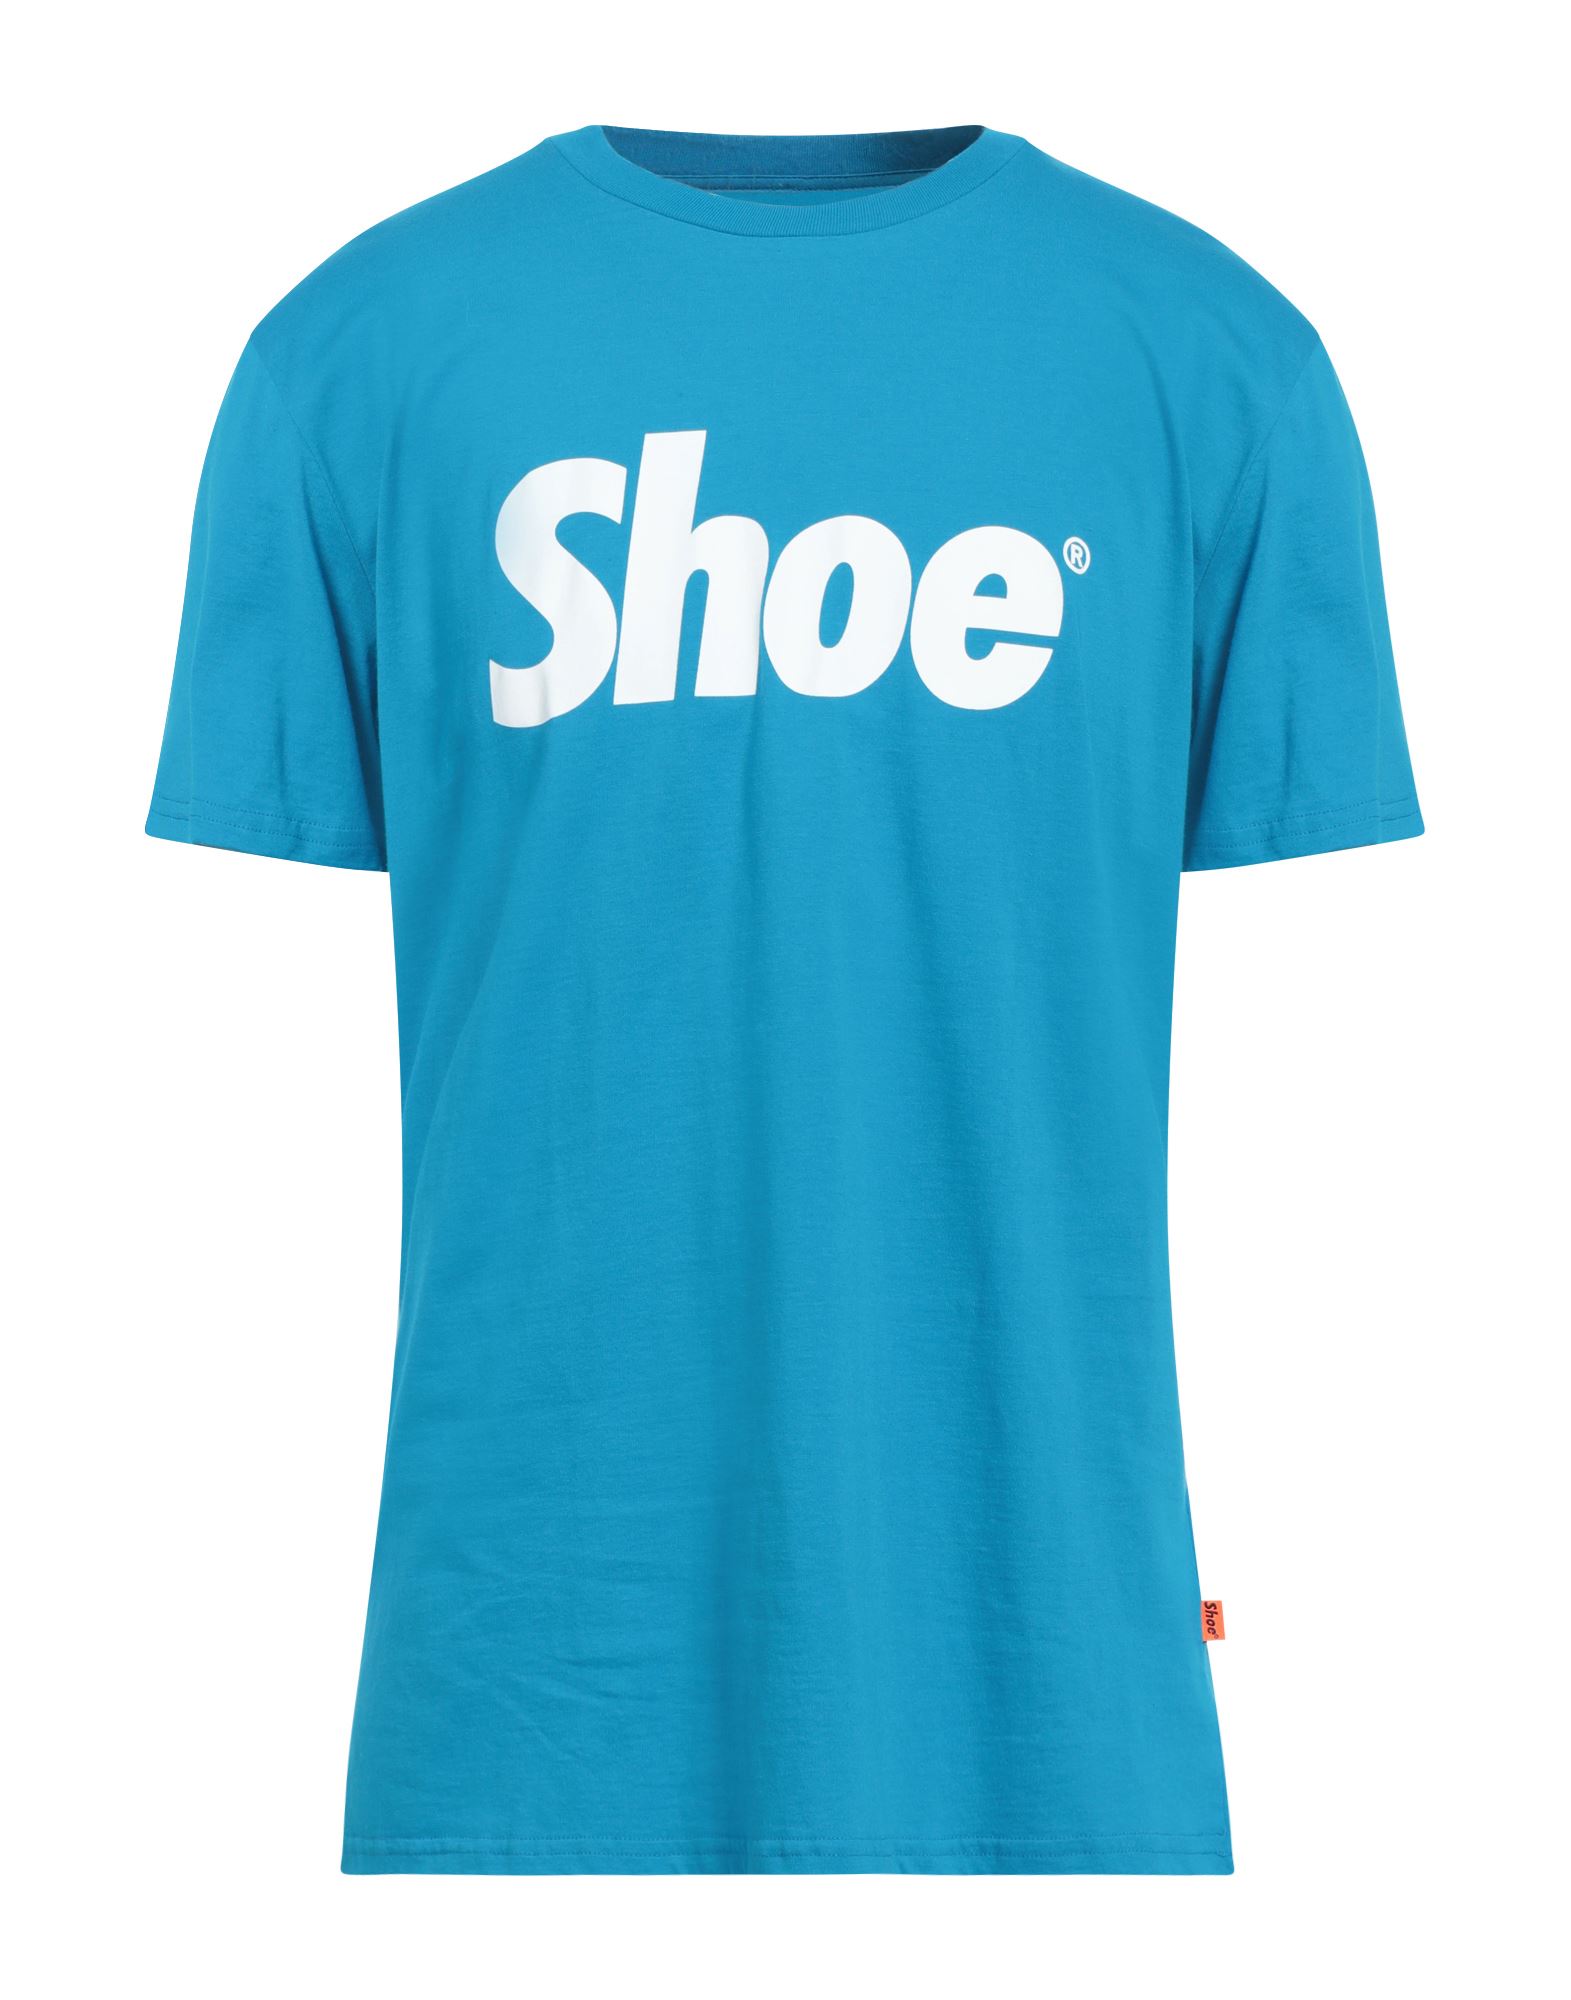 Shoe® Shoe Man T-shirt Azure Size Xxl Cotton In Blue